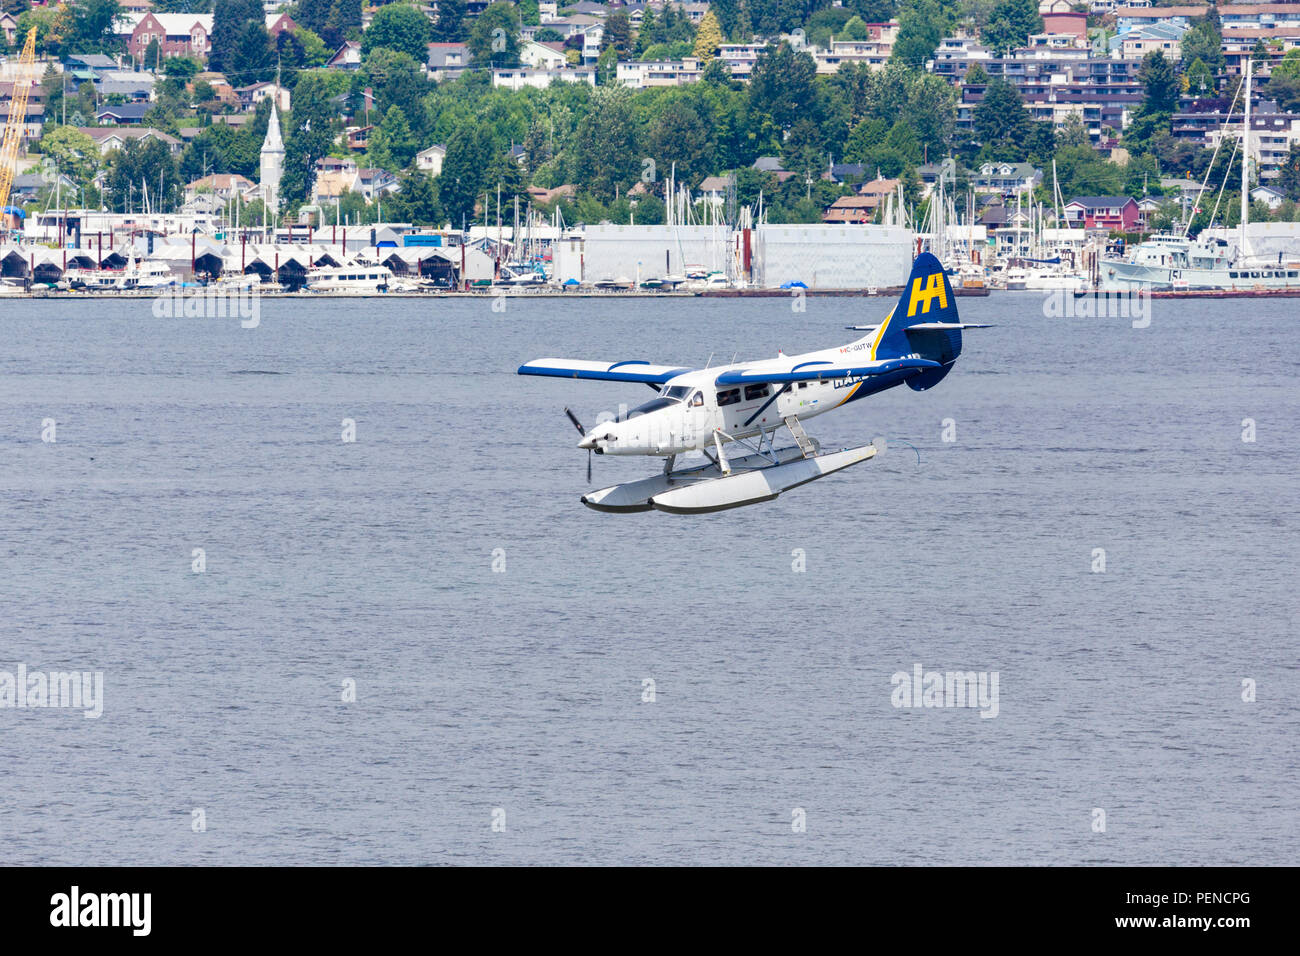 Sur flotteurs C-GUTW un De Havilland DHC-3 Otter Turbo, arrivant sur la terre après avoir pris un vol pour les touristes du port de Vancouver, Colombie Britannique Banque D'Images